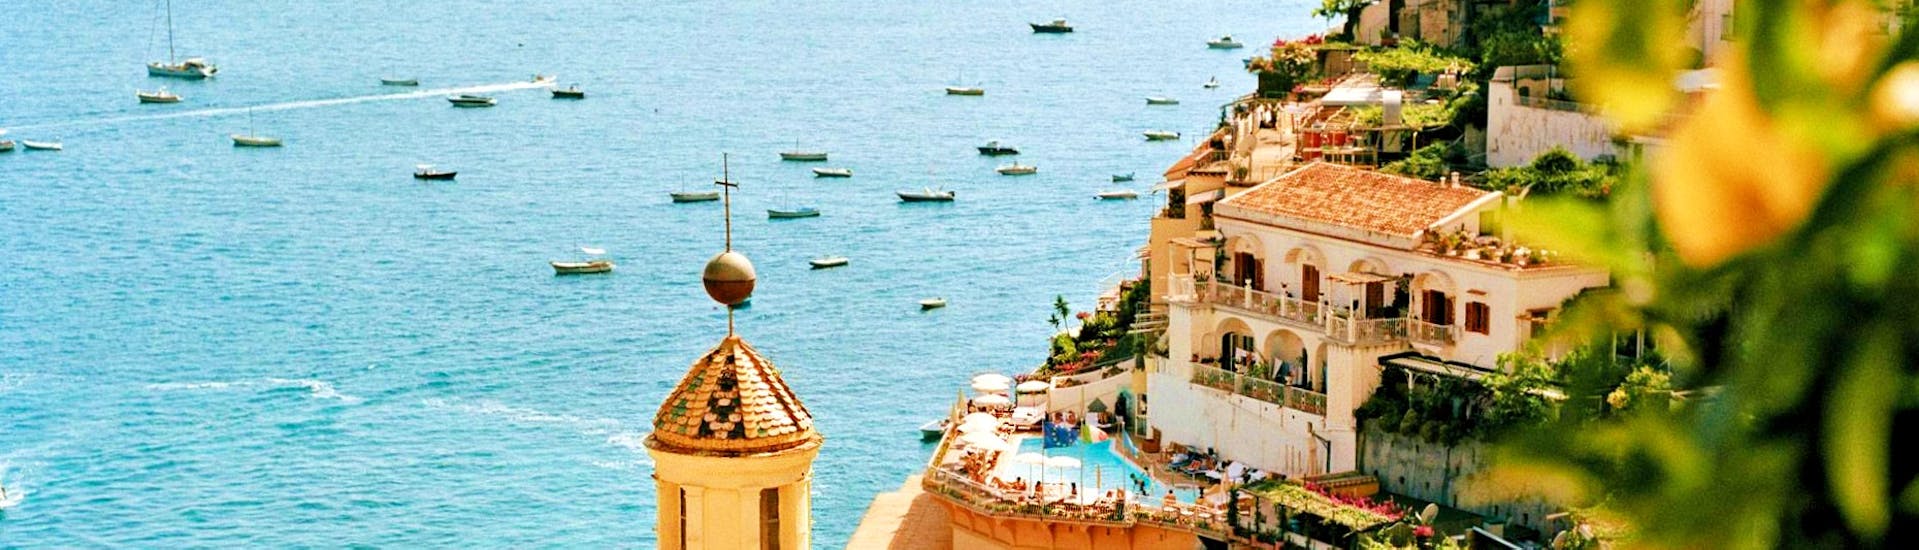 Vue de la mer et de la colline à Positano lors de la Balade en bateau le long de la côte de Sorrente, à Positano & Amalfi avec HP Travel.